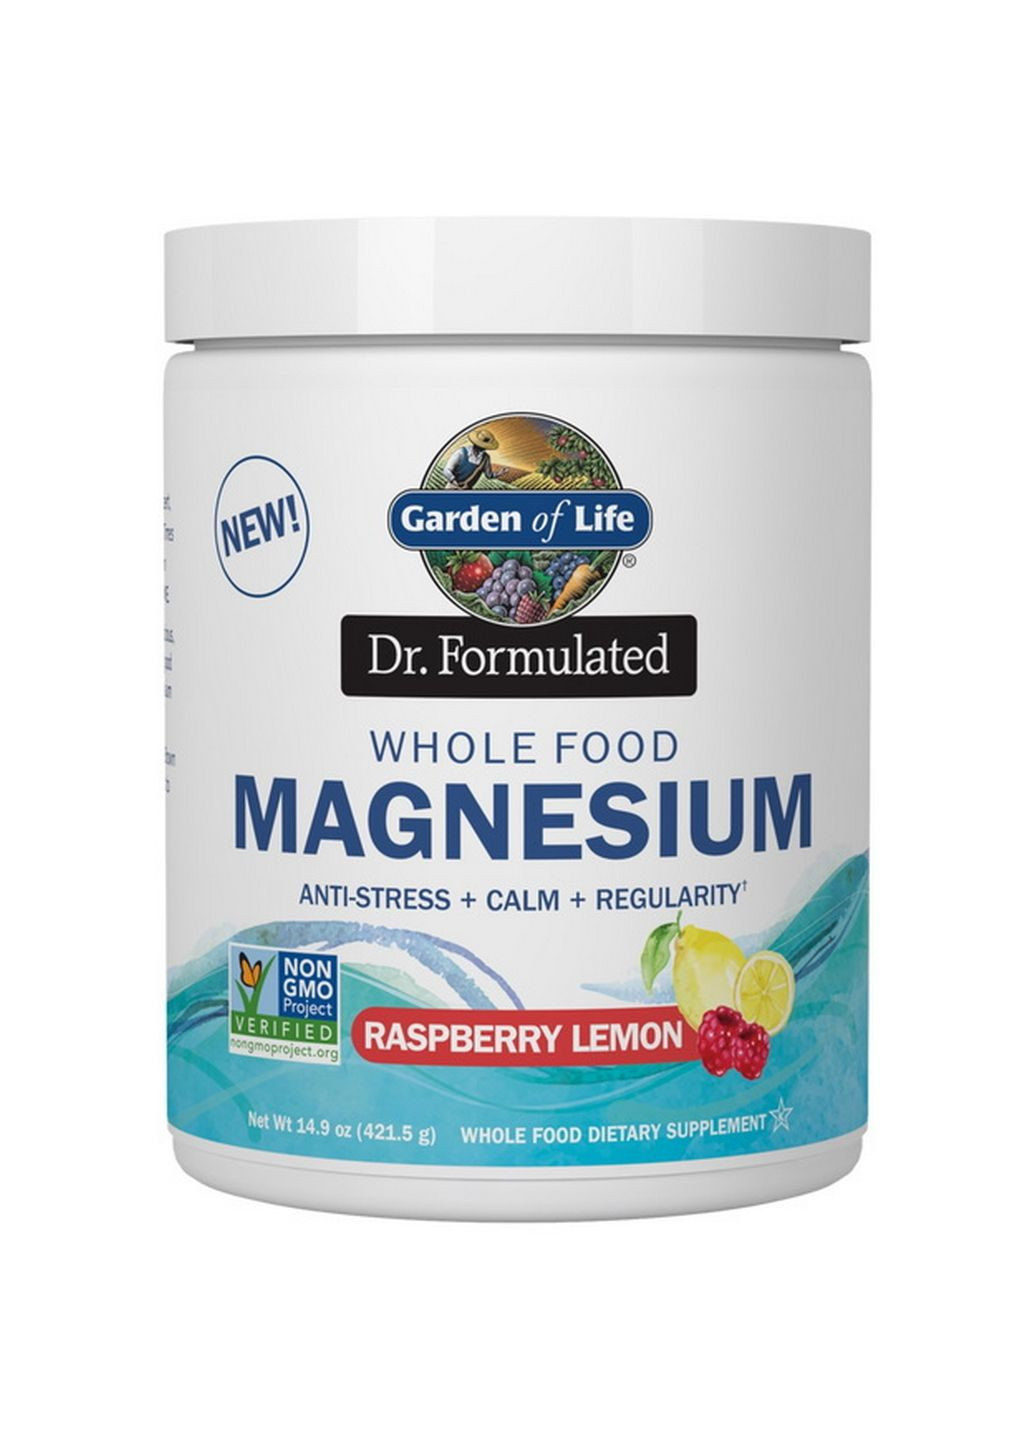 Витамины и минералы Dr. Formulated Whole Food Magnesium, 420 грамм Лимон-малина (421 грамм) Garden of Life (293338584)